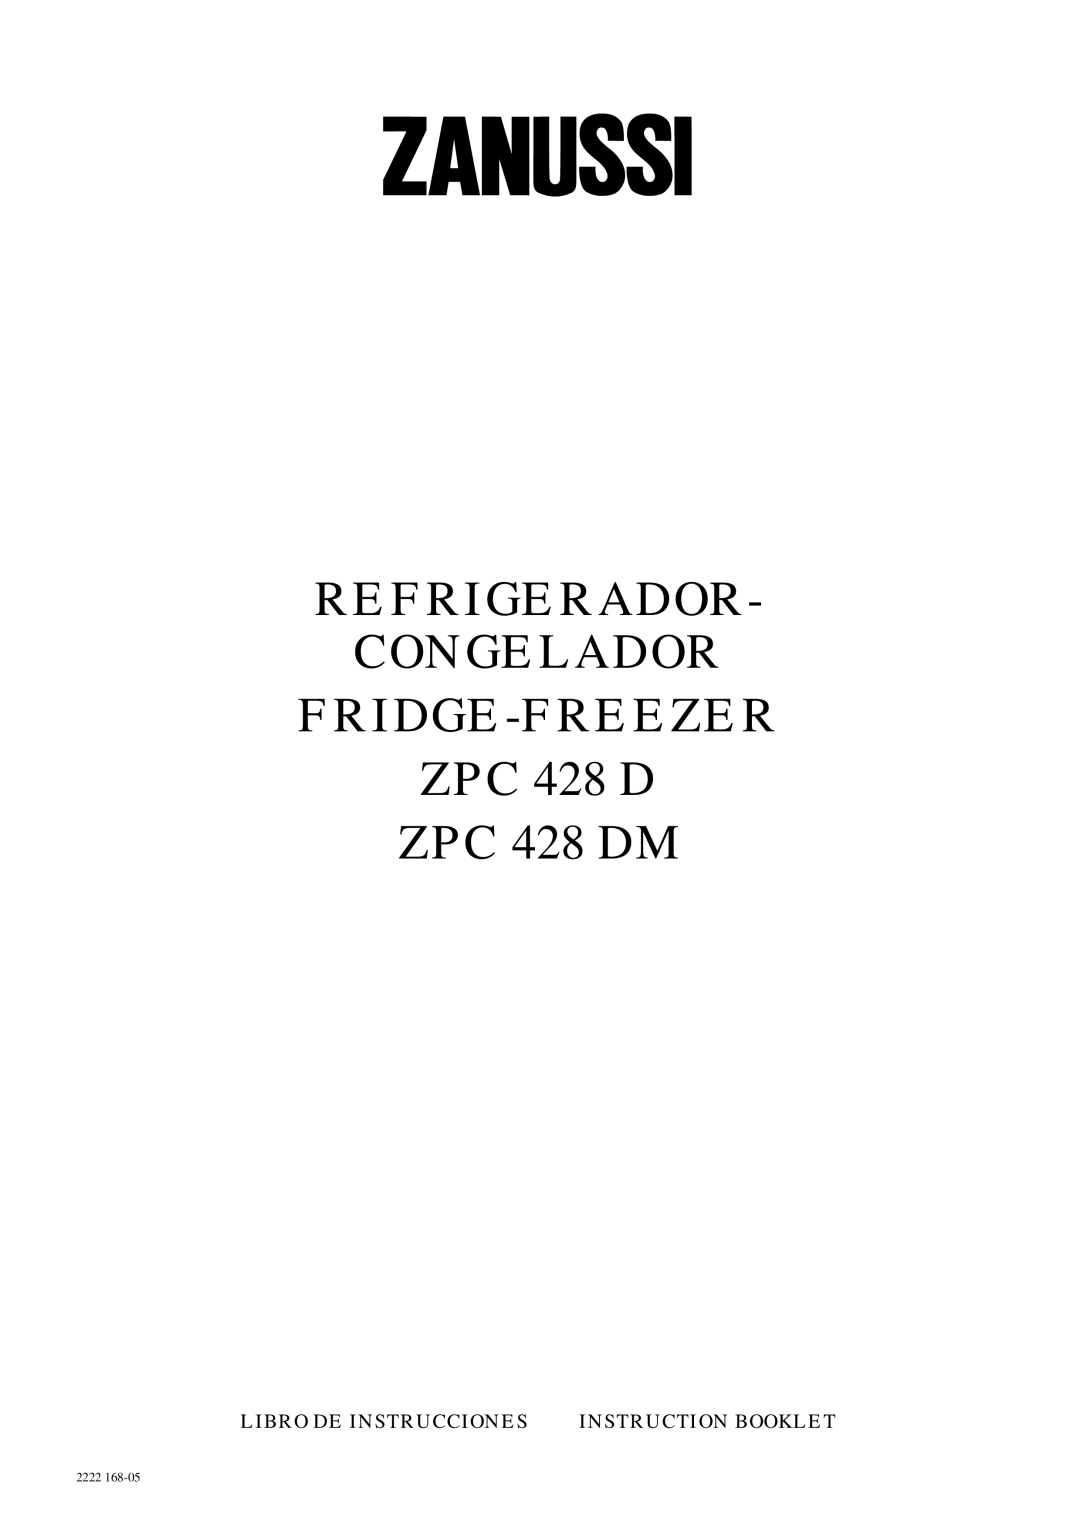 Zanussi ZPC 428 DM manual Refrigerador Congelador FRIDGE-FREEZER 